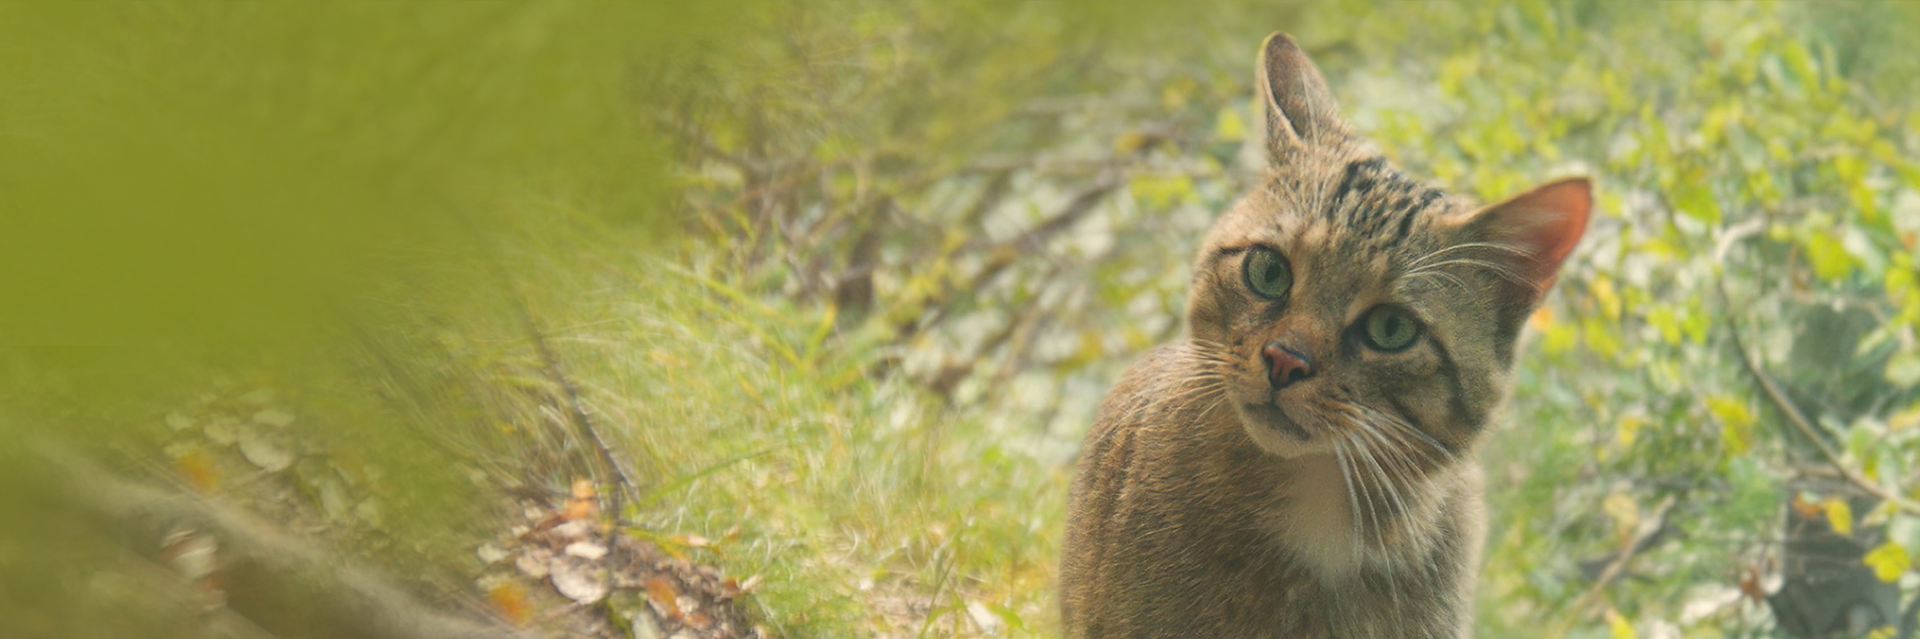 Europäische Wildkatze (Felis silvestris) | David Cebulla Naturfilme